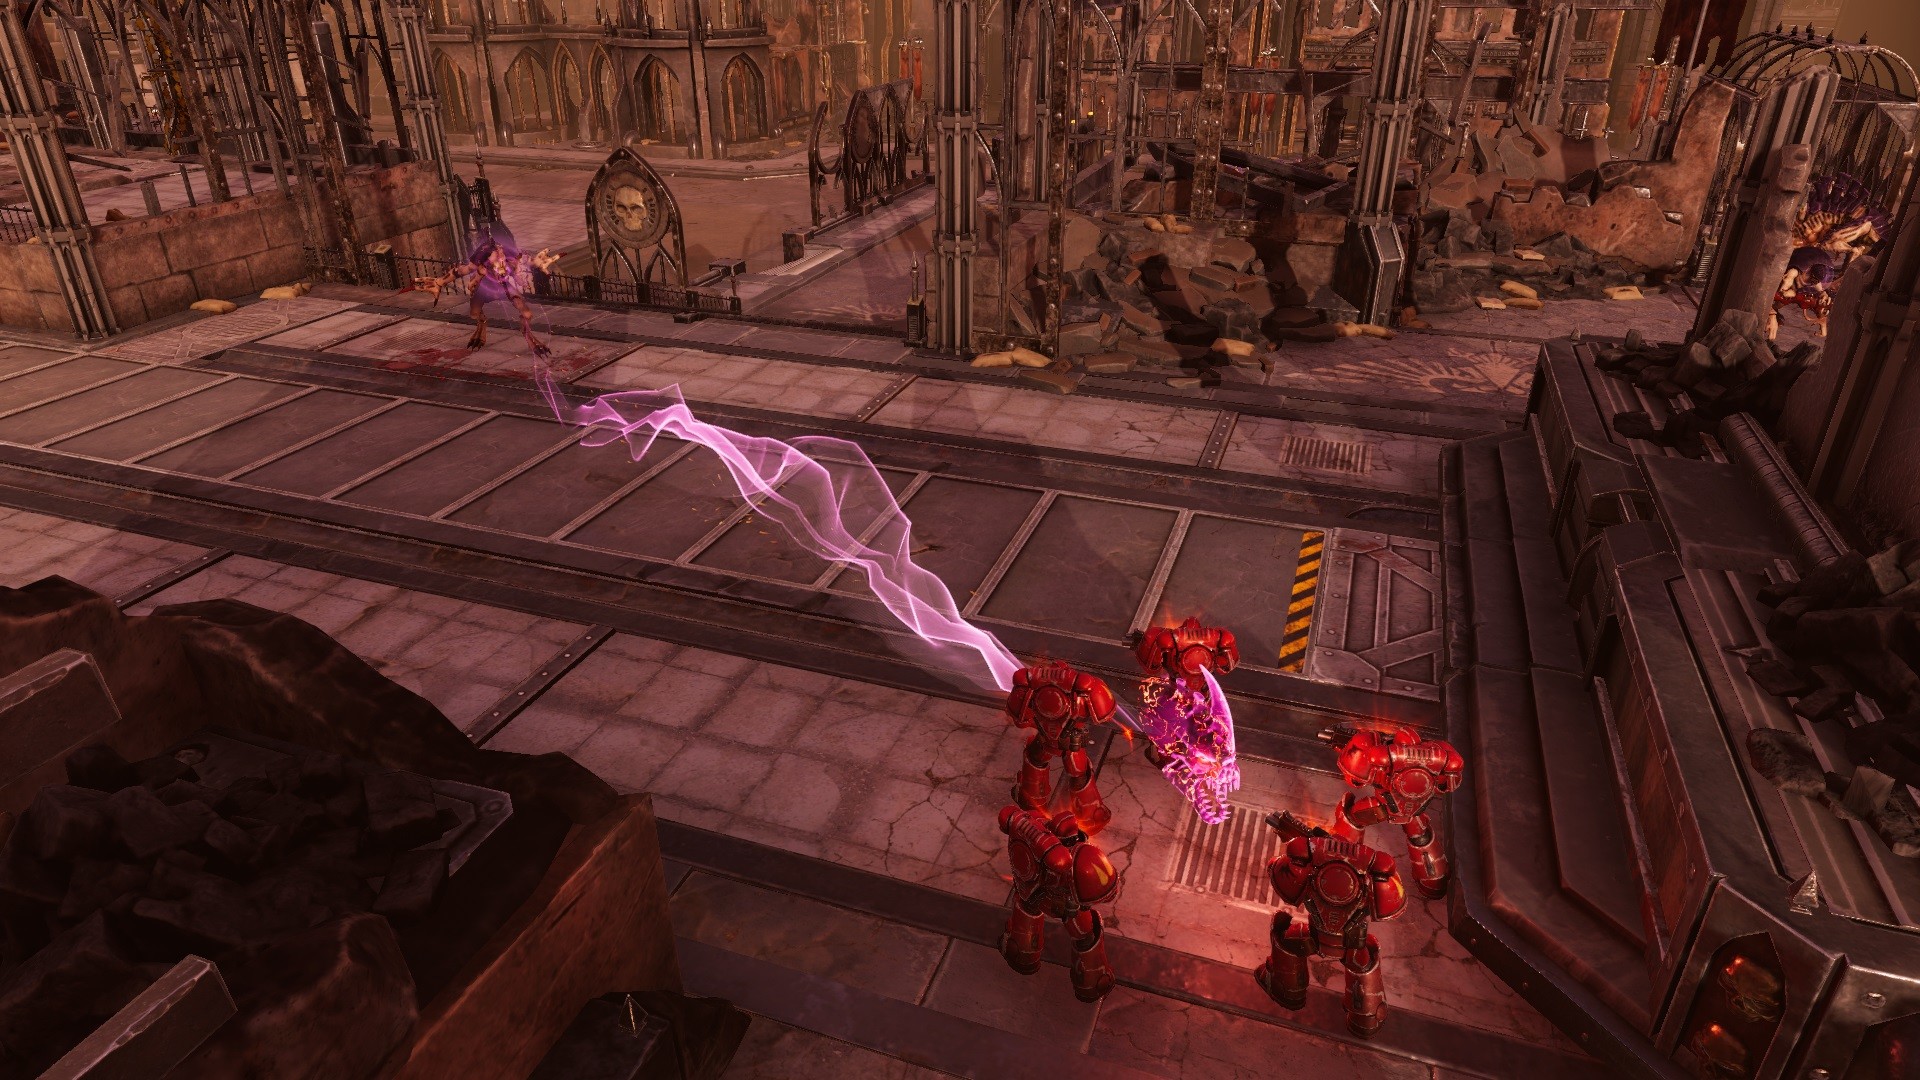 [$ 2.03] Warhammer 40,000: Battlesector - Tyranid Elites DLC Steam CD Key